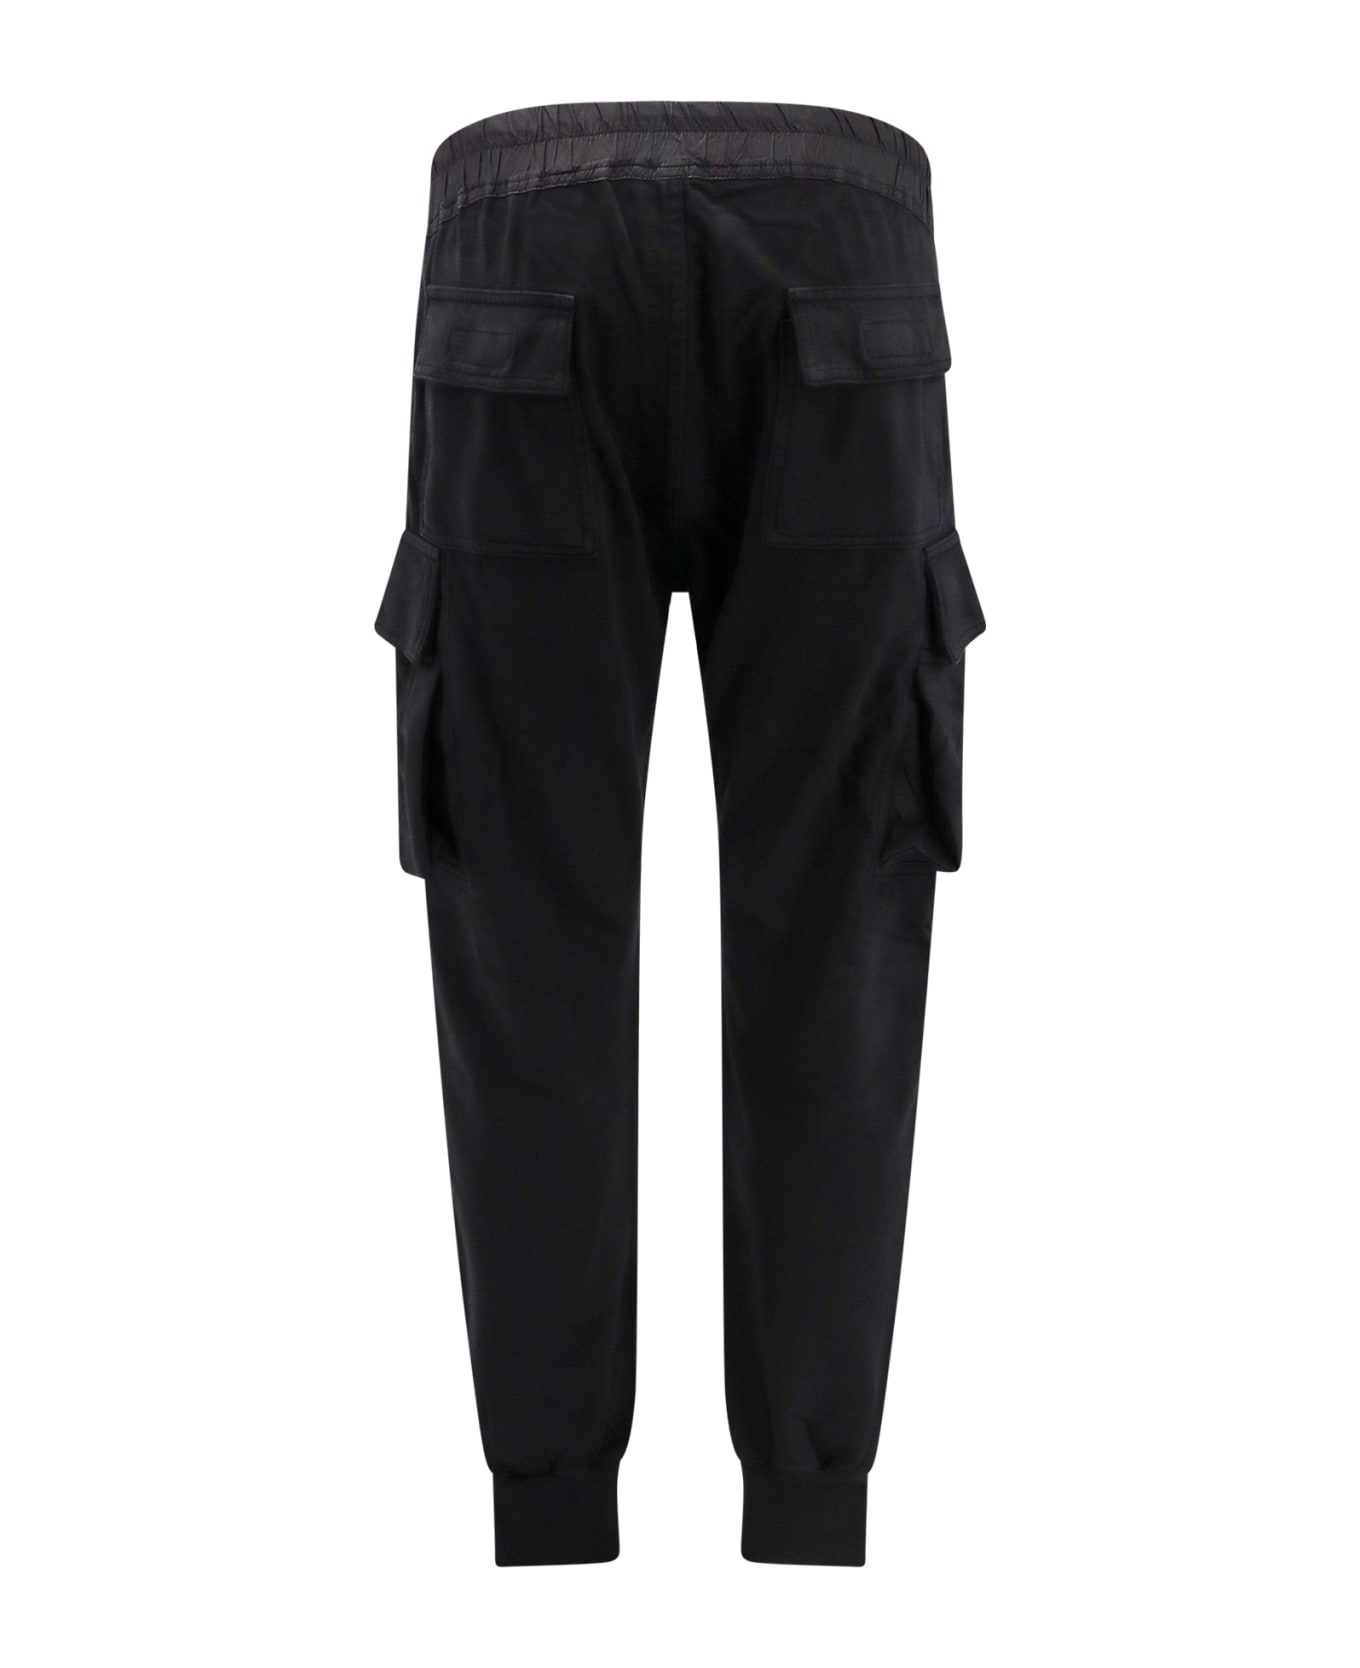 DRKSHDW Trouser - Black スウェットパンツ